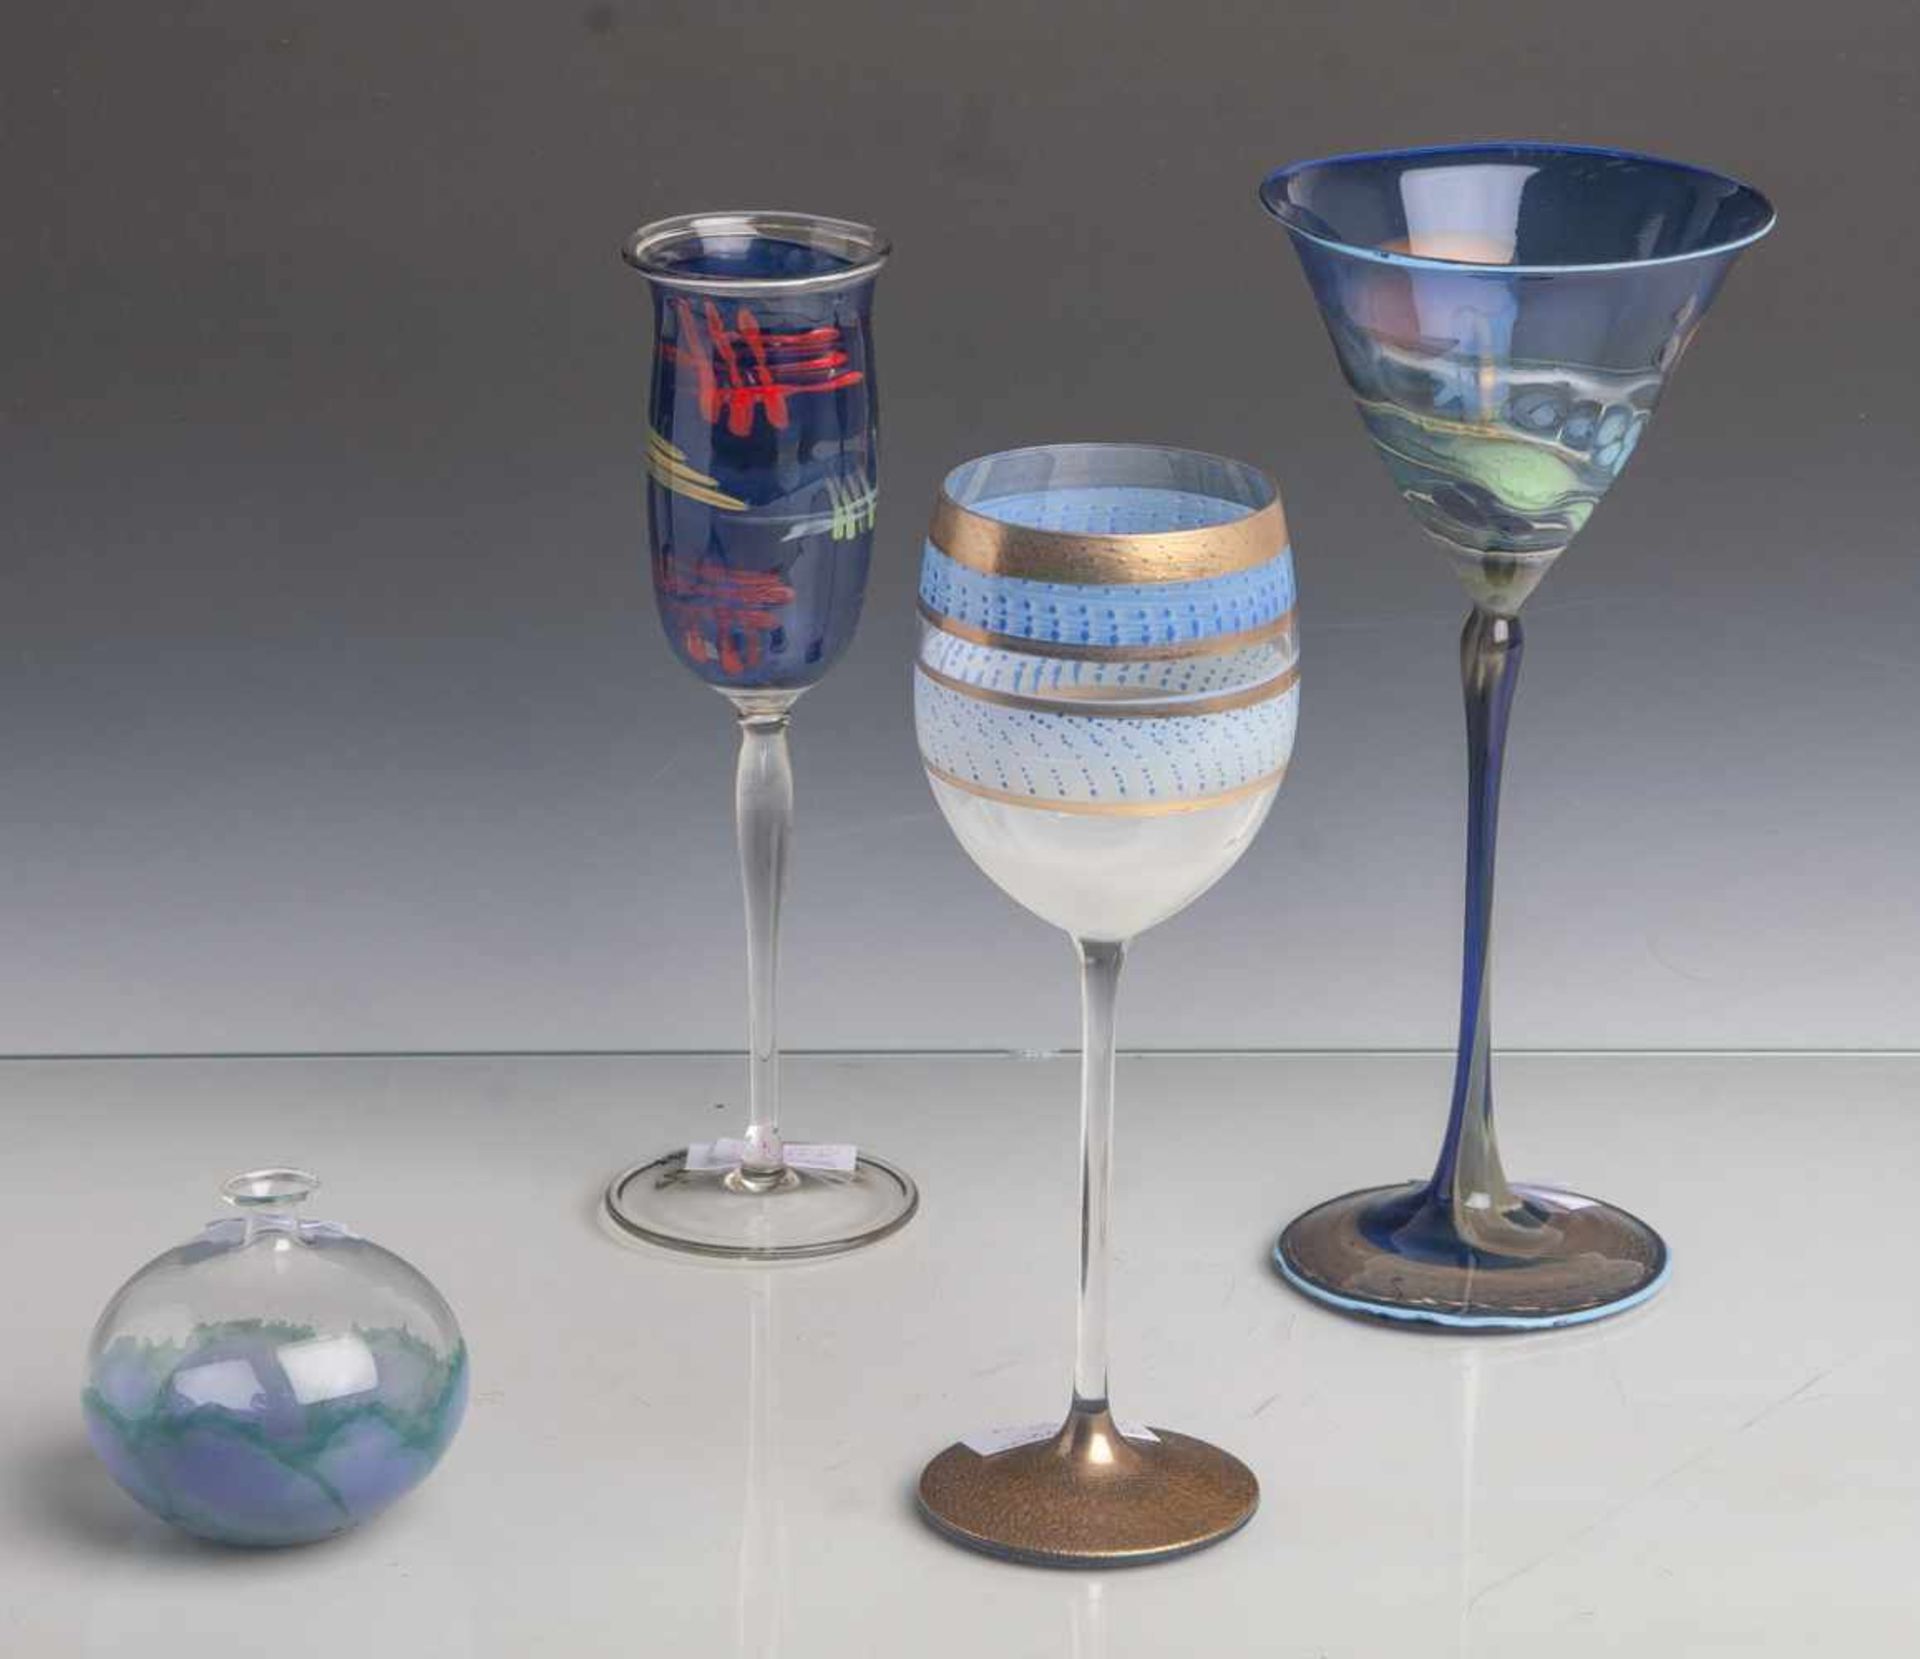 Konvolut von 3 Gläsern u. 1 Vase: Stengelglas, Entwurf Stefan Scheuerer (geb. 1960),farbloses